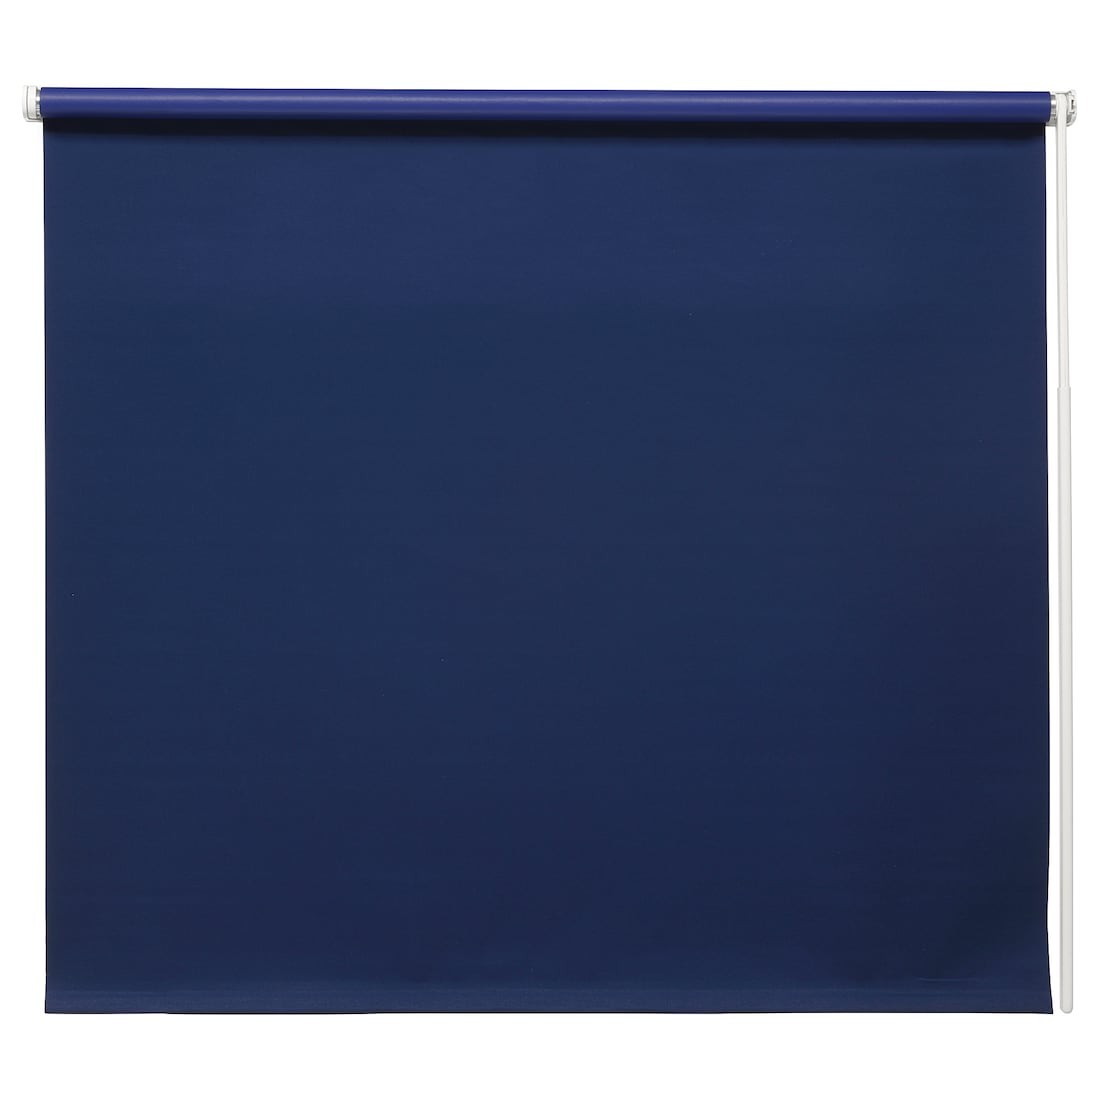 IKEA FRIDANS ФРИДАНС Блокирующая свет рулонная штора, синий, 100x195 см 40396886 403.968.86